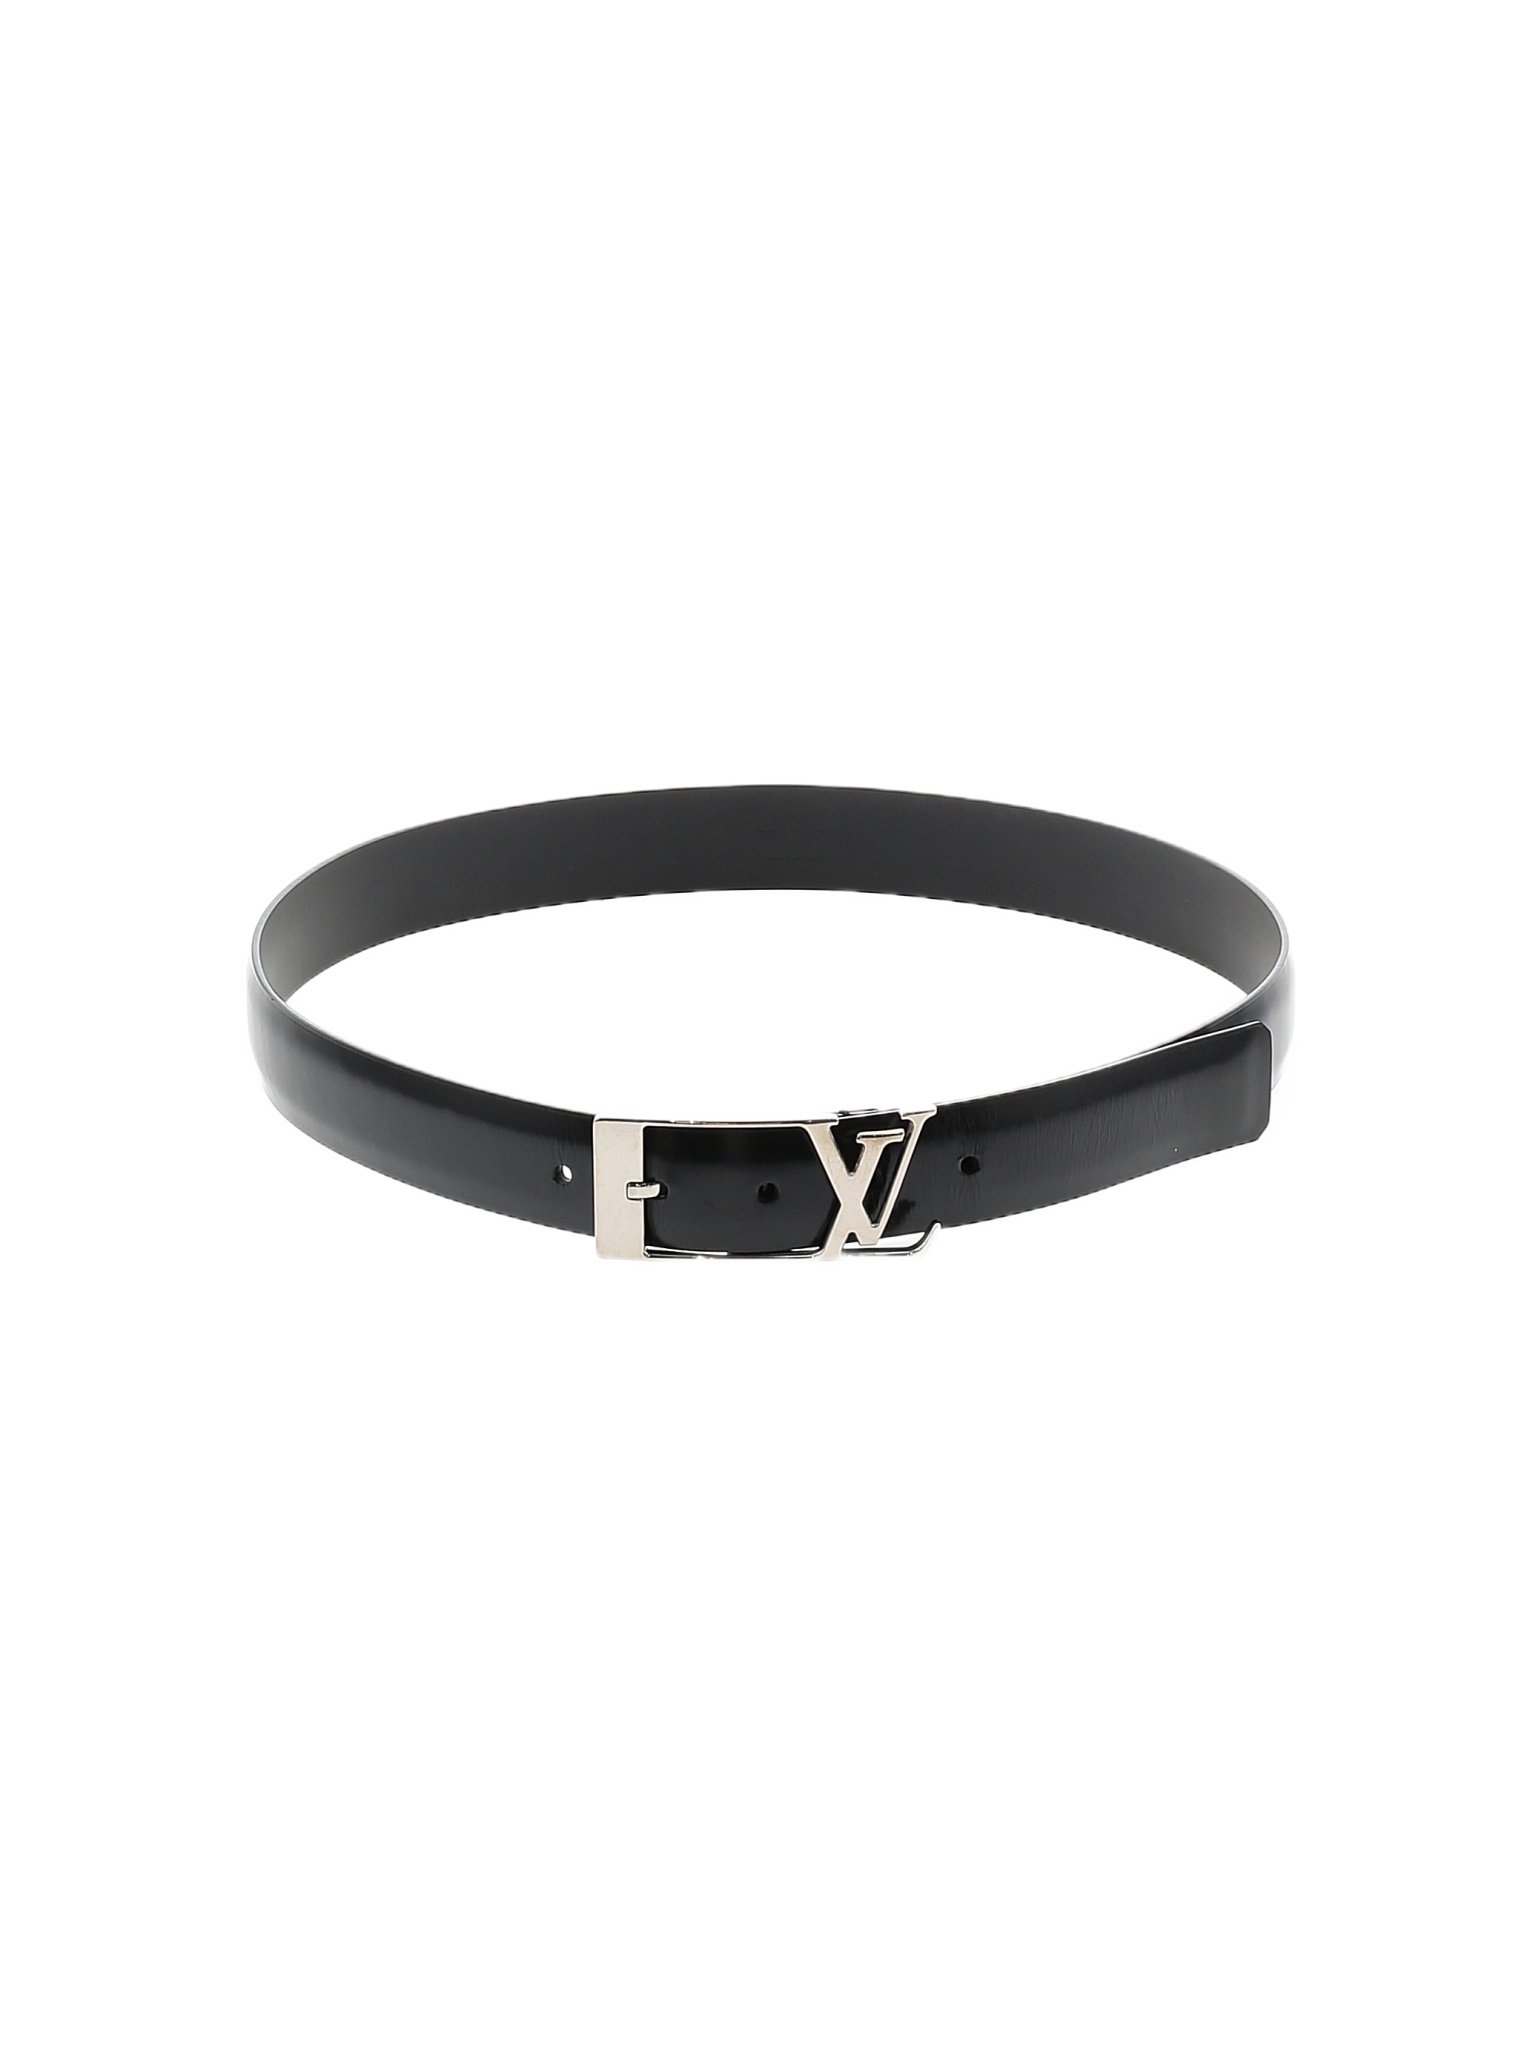 Louis Vuitton Black Leather Ceinture Anagram LV Pin Buckle Belt